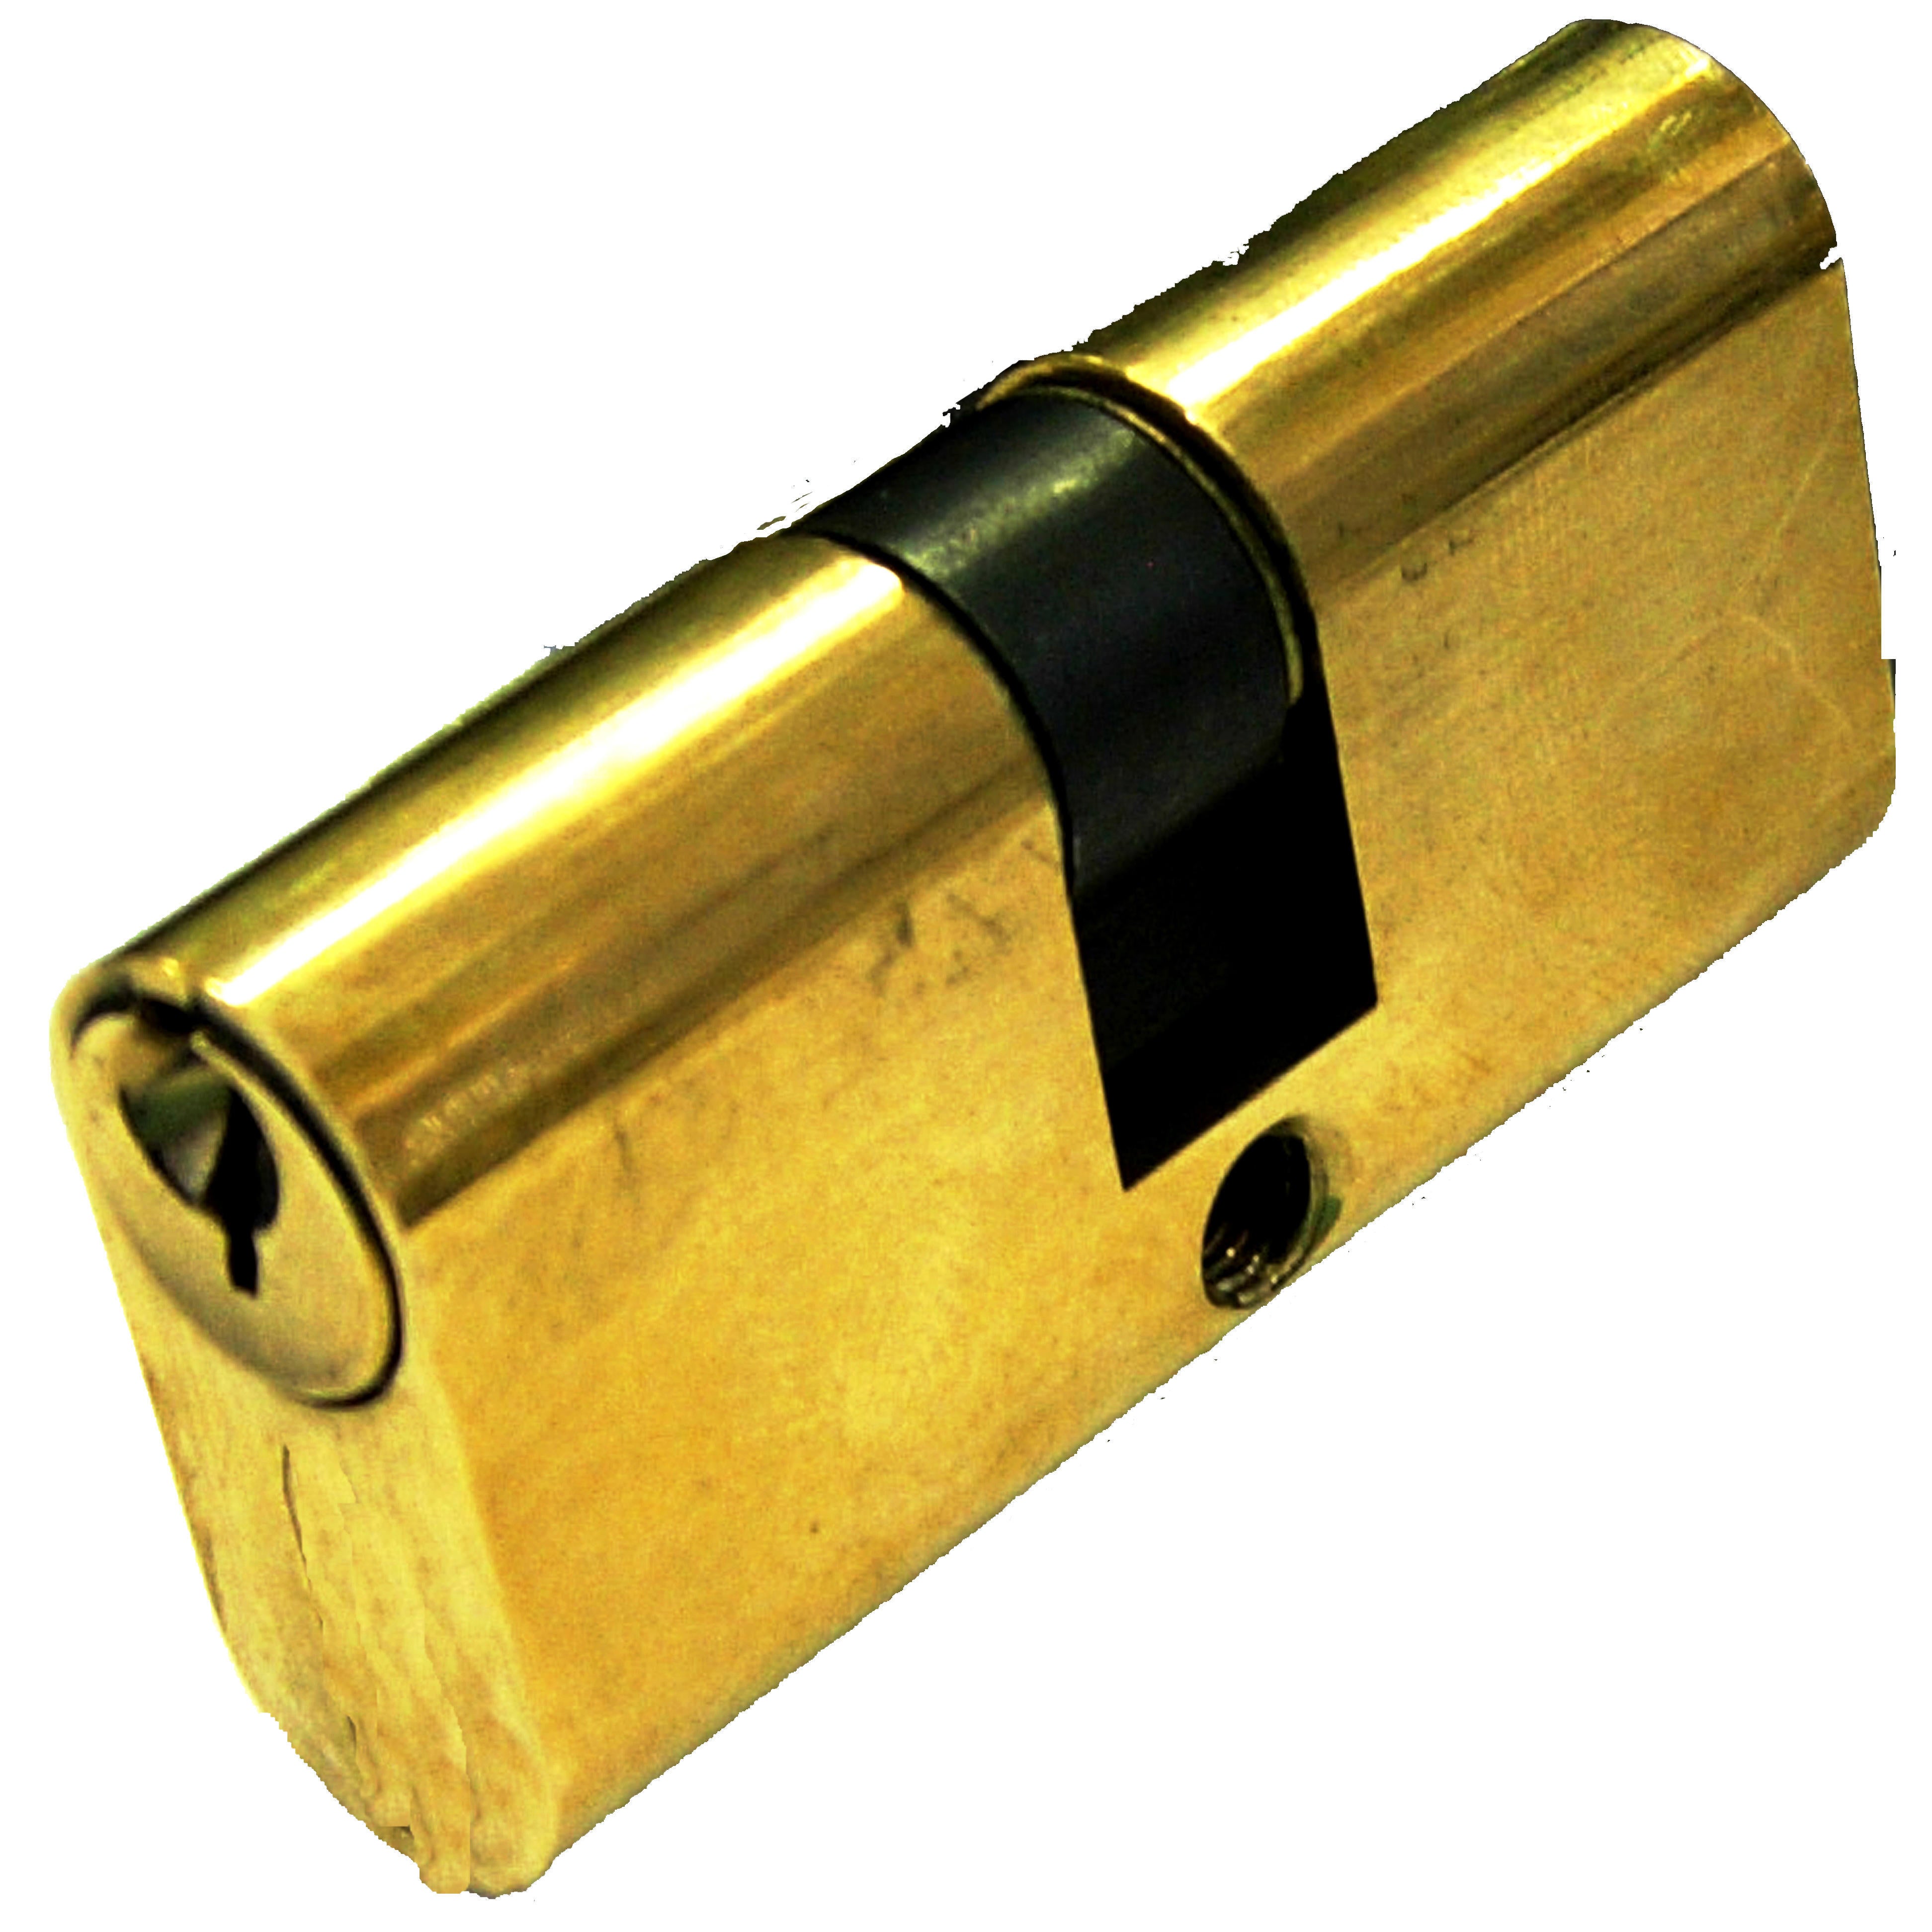 Cilindo ovale 2302CS 28 + 28 mm, 2 ingressi chiave in acciaio ottonato - 1